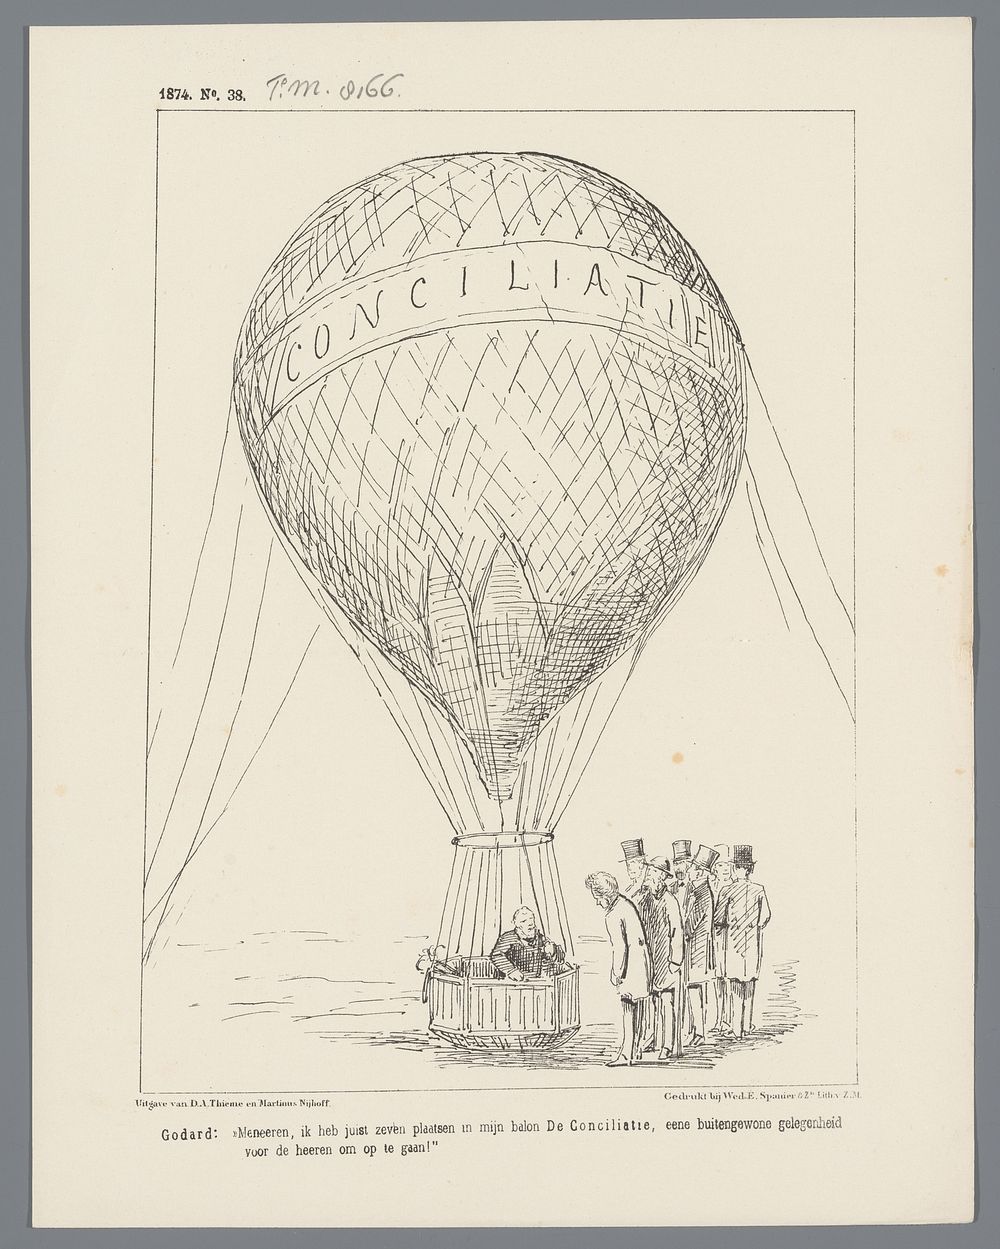 Spotprent waarin de ballonvaarder Godard met ministerie Heemskerk uitnodigt om mee te varen in zijn ballon 'Conciliatie'…